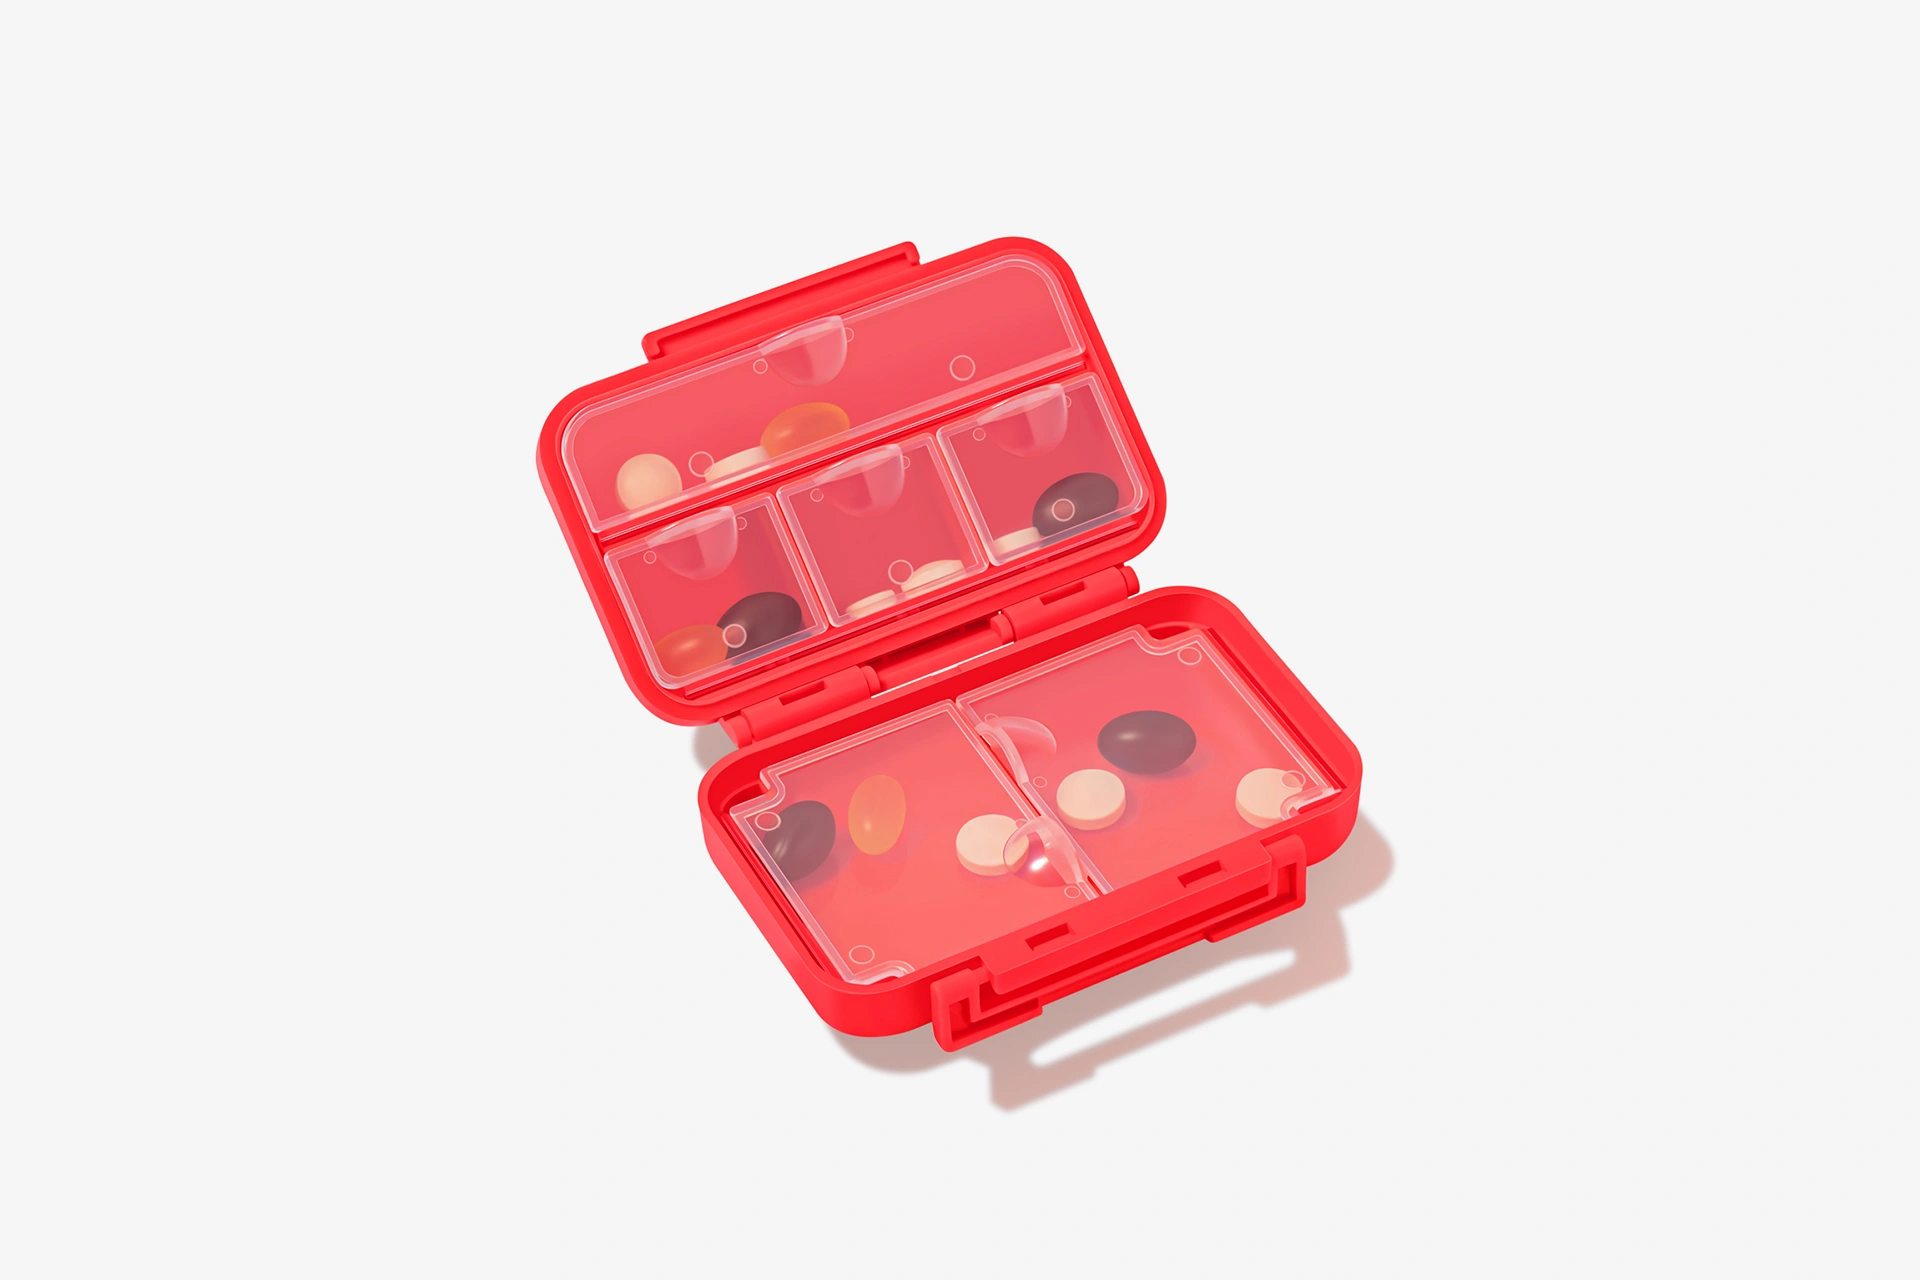 Gobox mini, raudonos spalvos